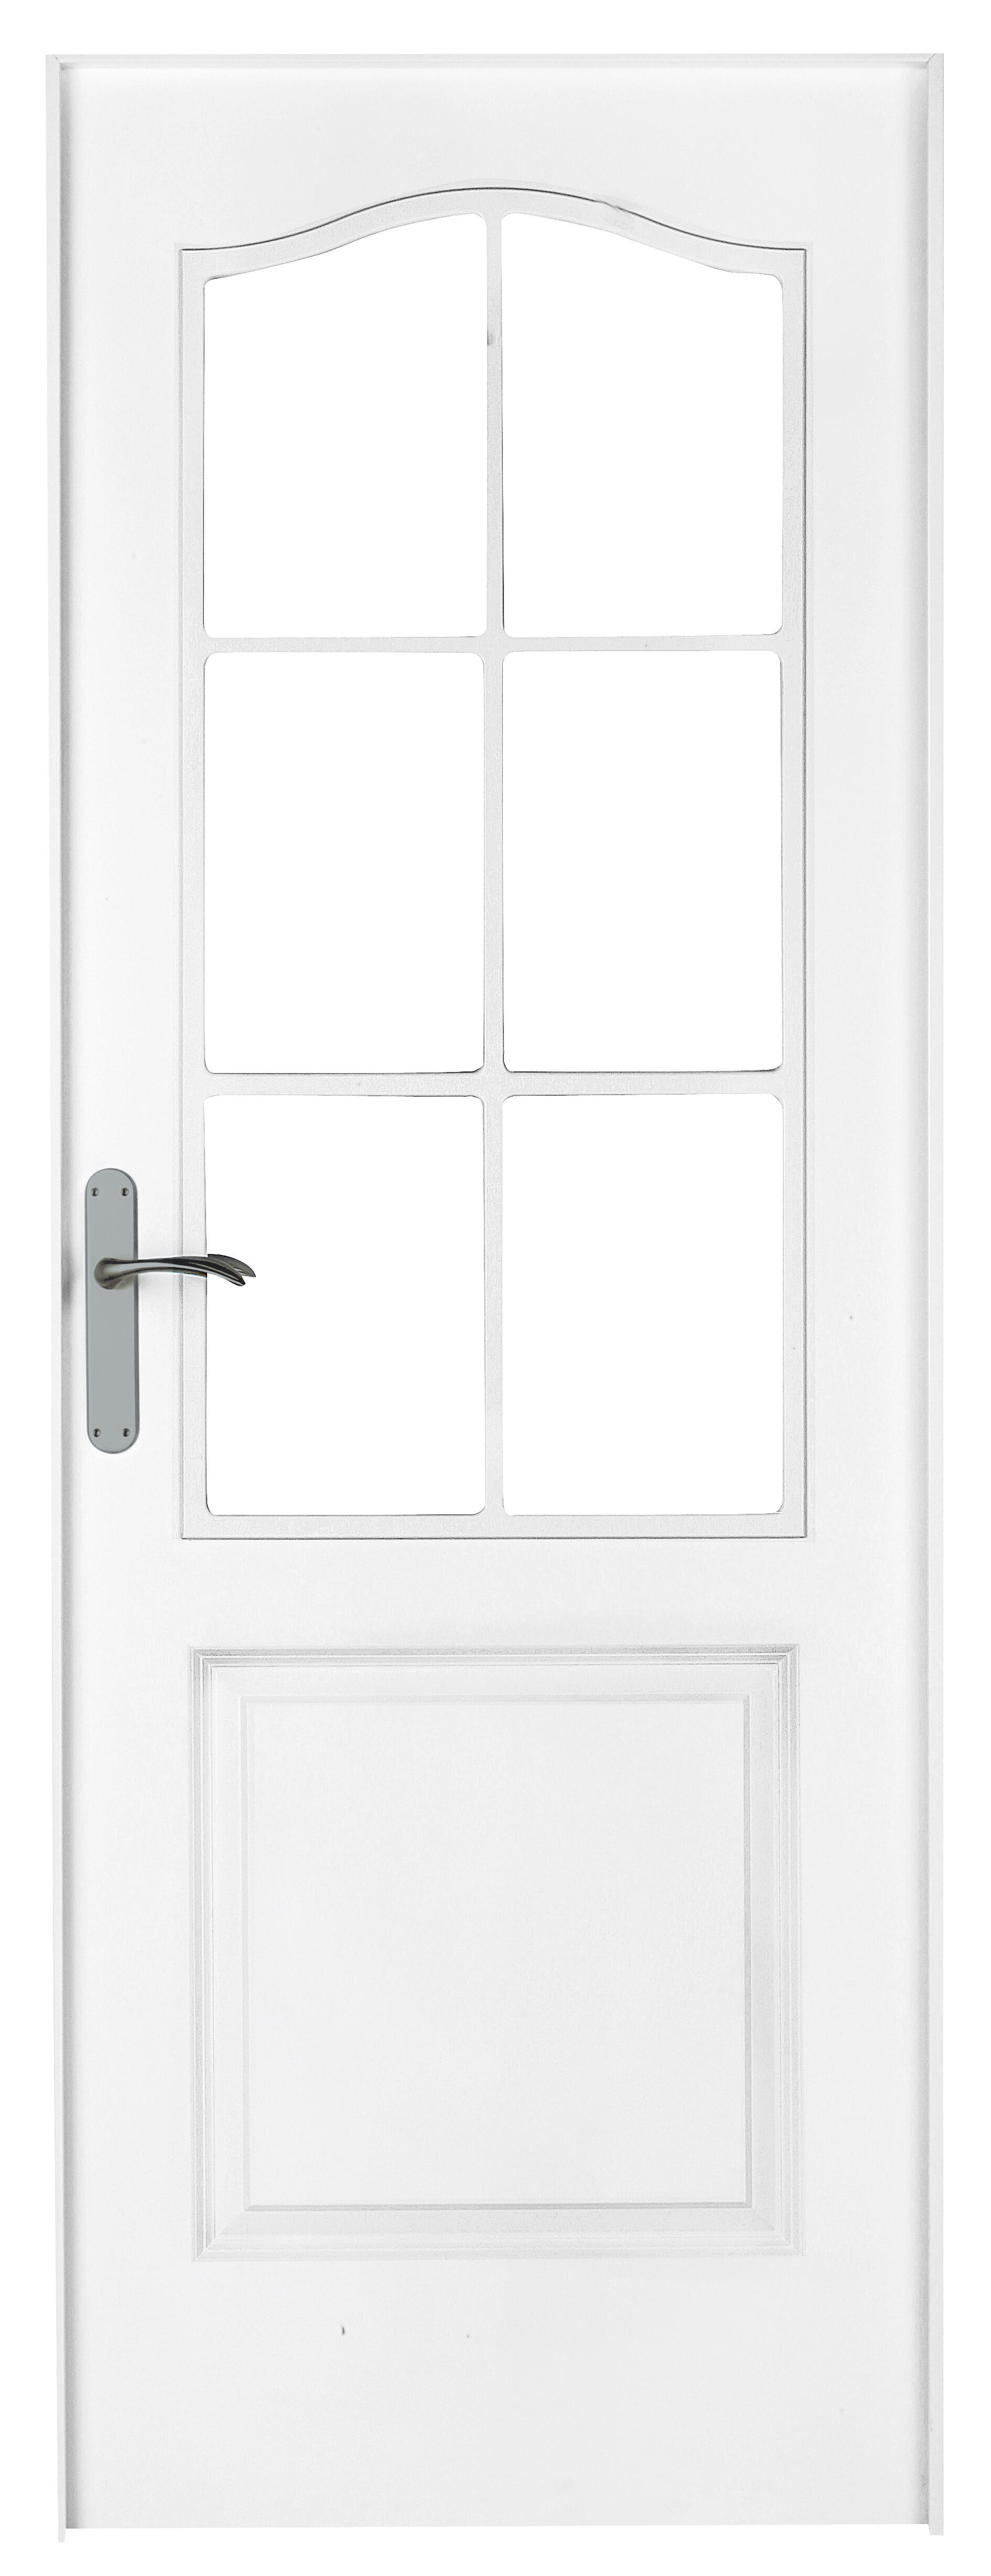 Puerta abatible bonn blanca aero blanco derecha con cristal de 90x30 y 72.5cm